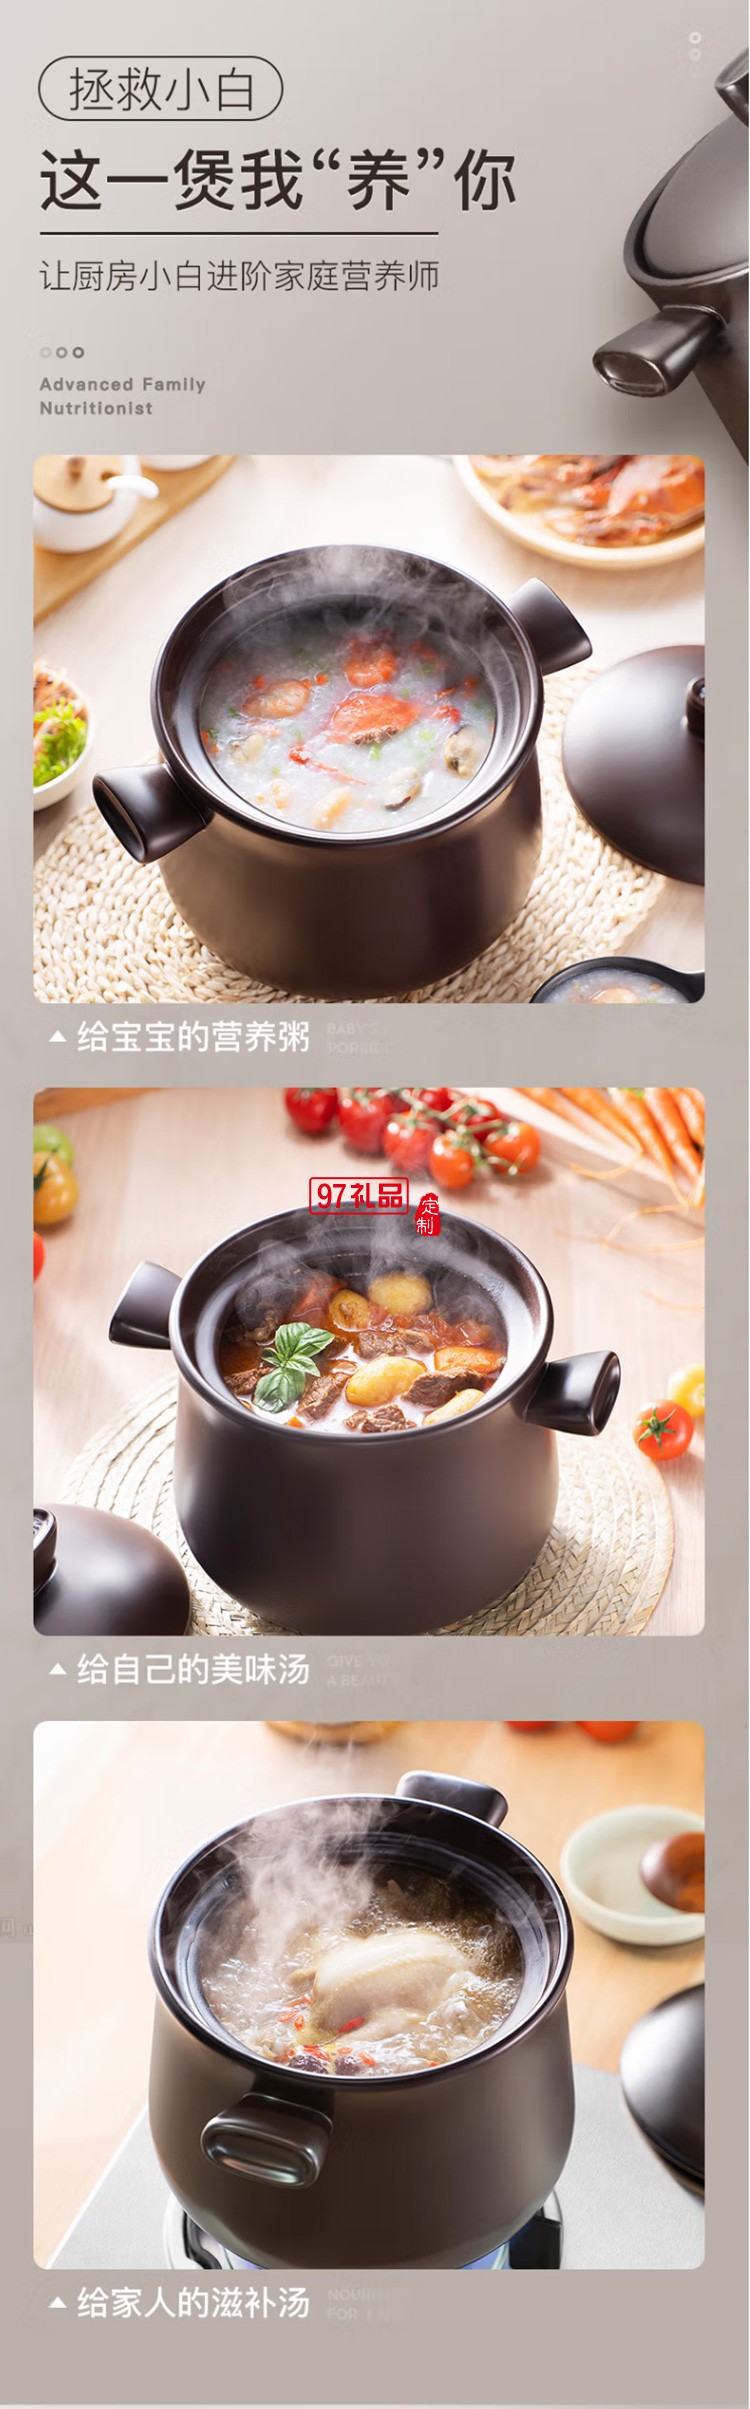 苏泊尔砂锅石锅陶瓷煲3.5L煲汤锅炖锅TB35A1定制公司广告礼品